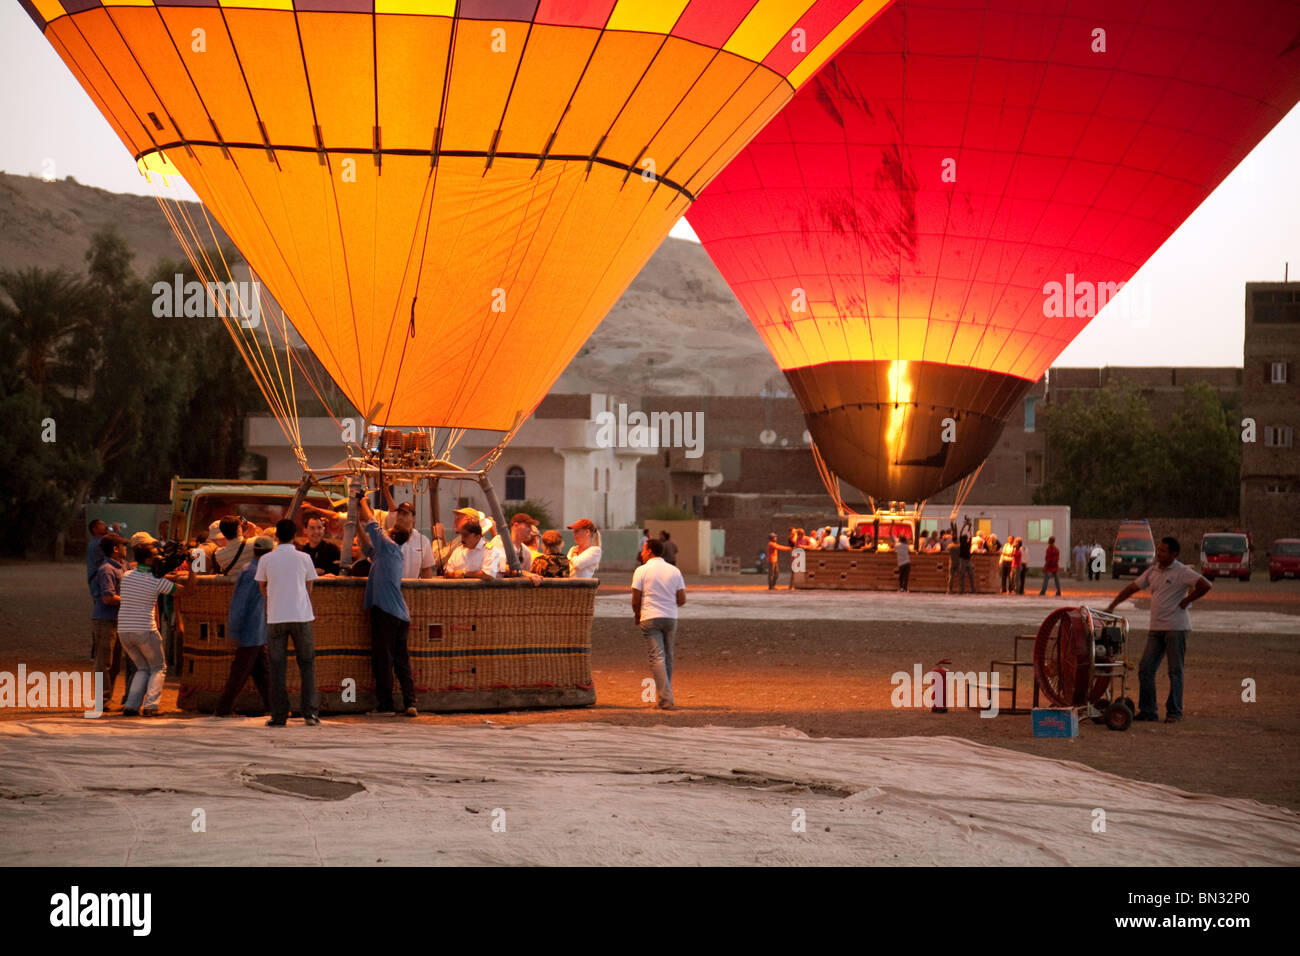 Due i palloni ad aria calda si prepara a sollevare all'alba, Luxor, Egitto, Africa, concetto di viaggi avventura Foto Stock